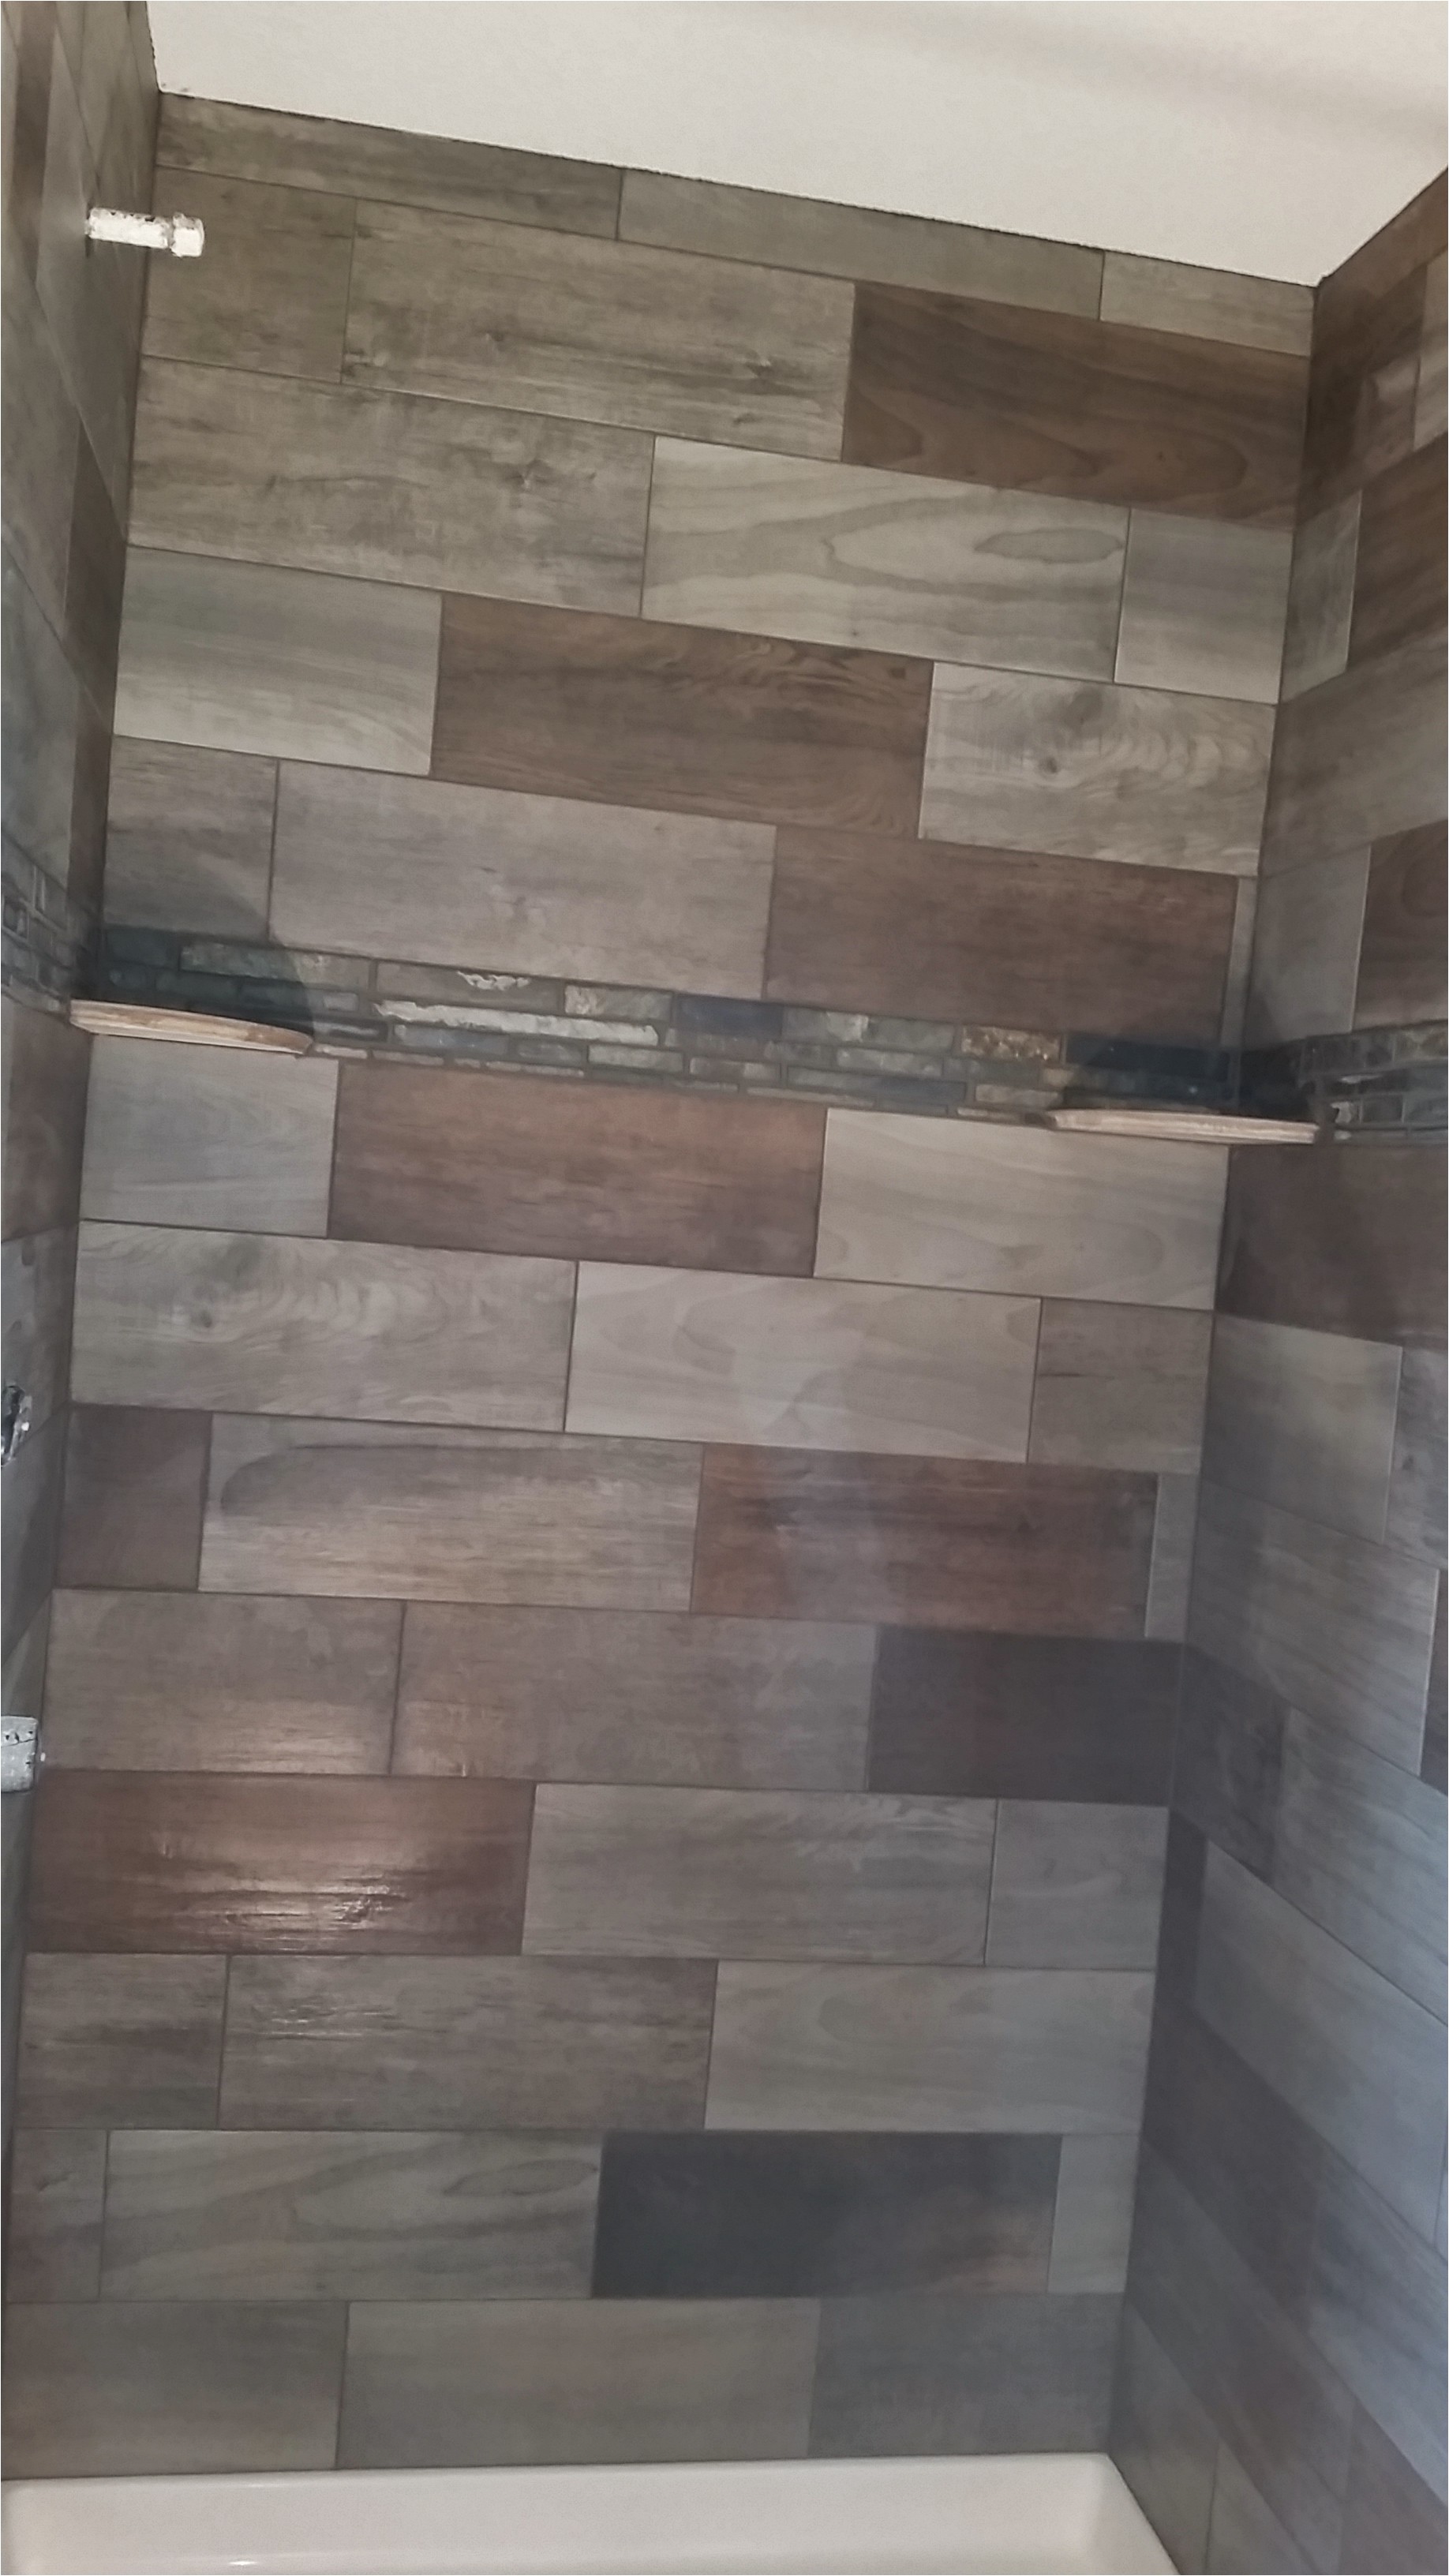 aspen leaf hardwood flooring tile fort collins 80524